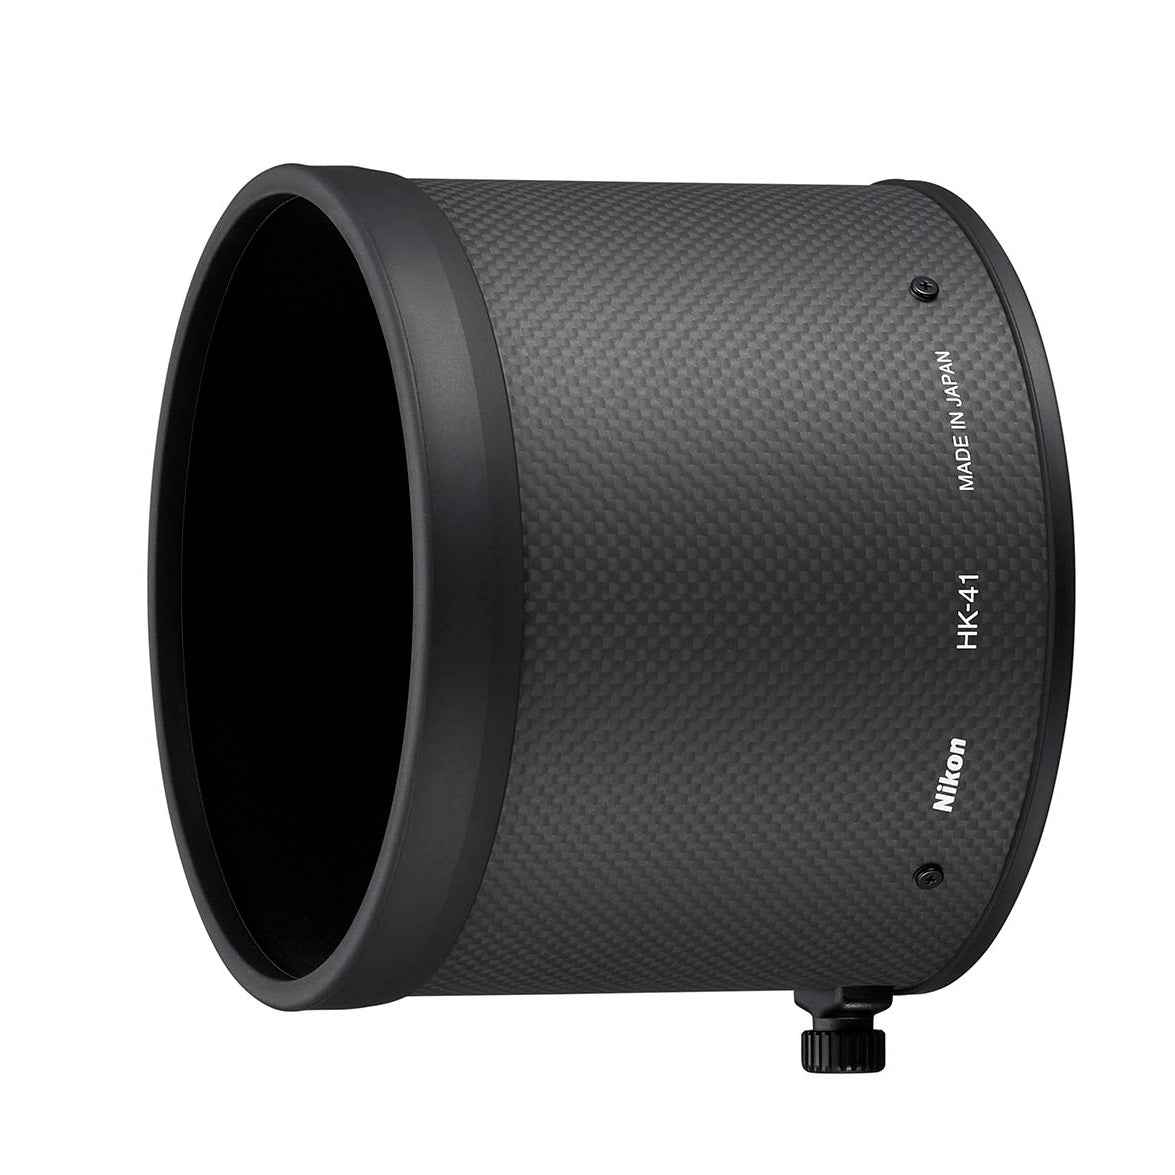 Nikon 180-400mm f4E TC1.4 FL ED VR Zoom-Nikkor Lens